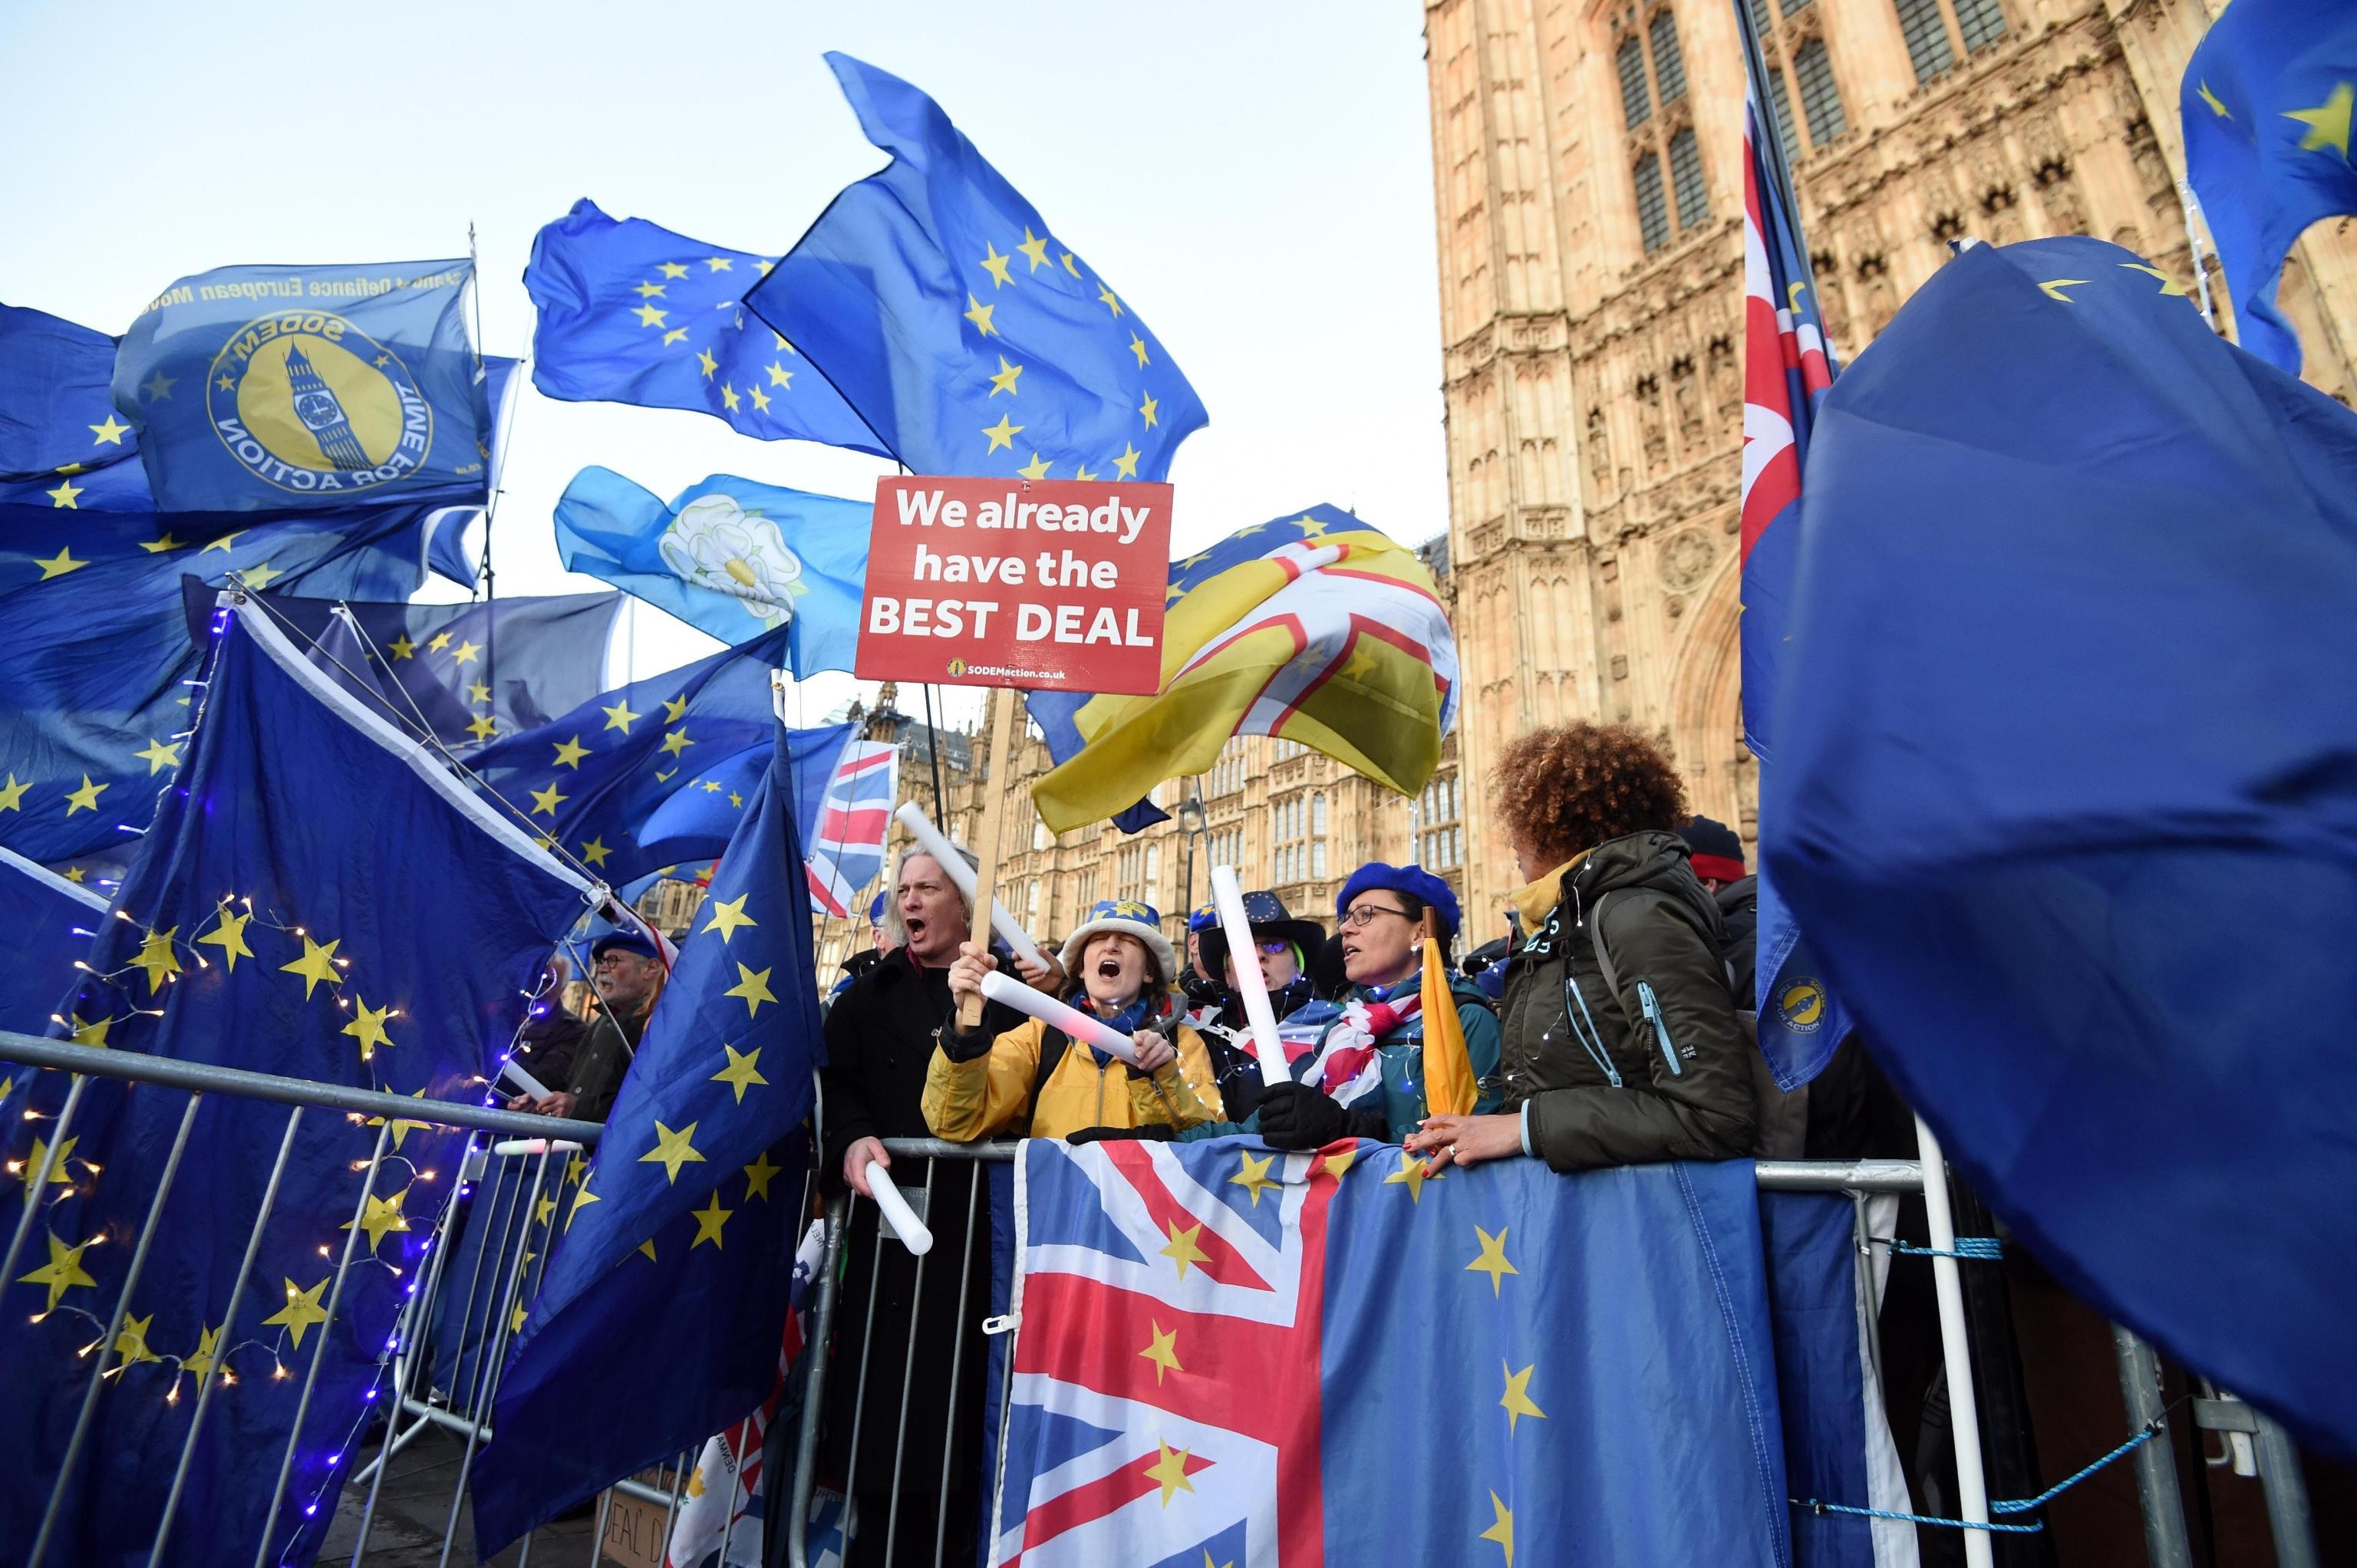 Folla di europeisti risponde agli indipendentisti. Per loro il miglior accordo è restare nell'Unione